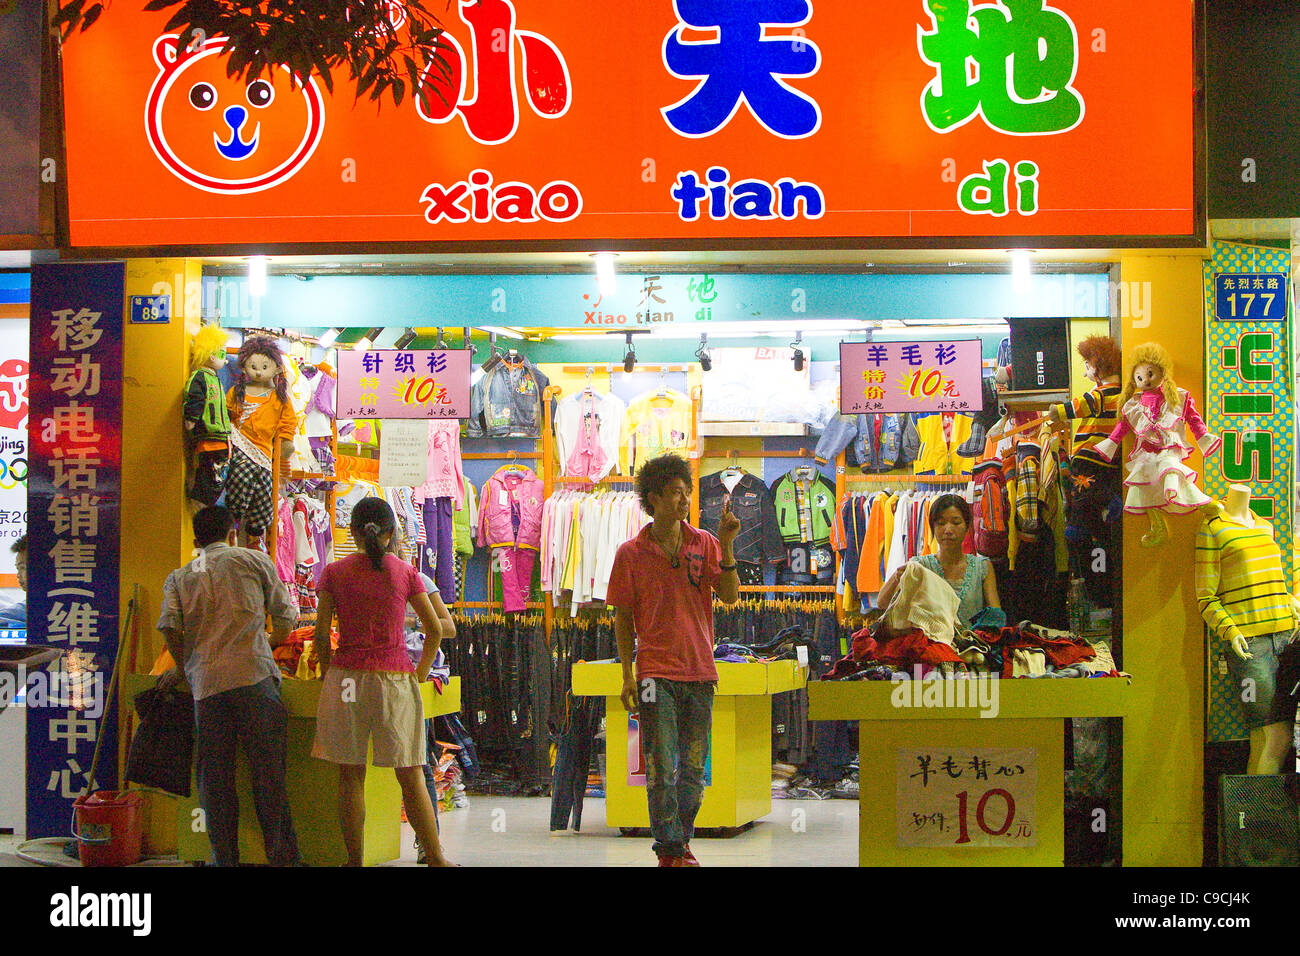 SHA WAN VILLAGE, PAN YU, nella provincia di Guangdong, Cina - negozio di abbigliamento di notte. Foto Stock